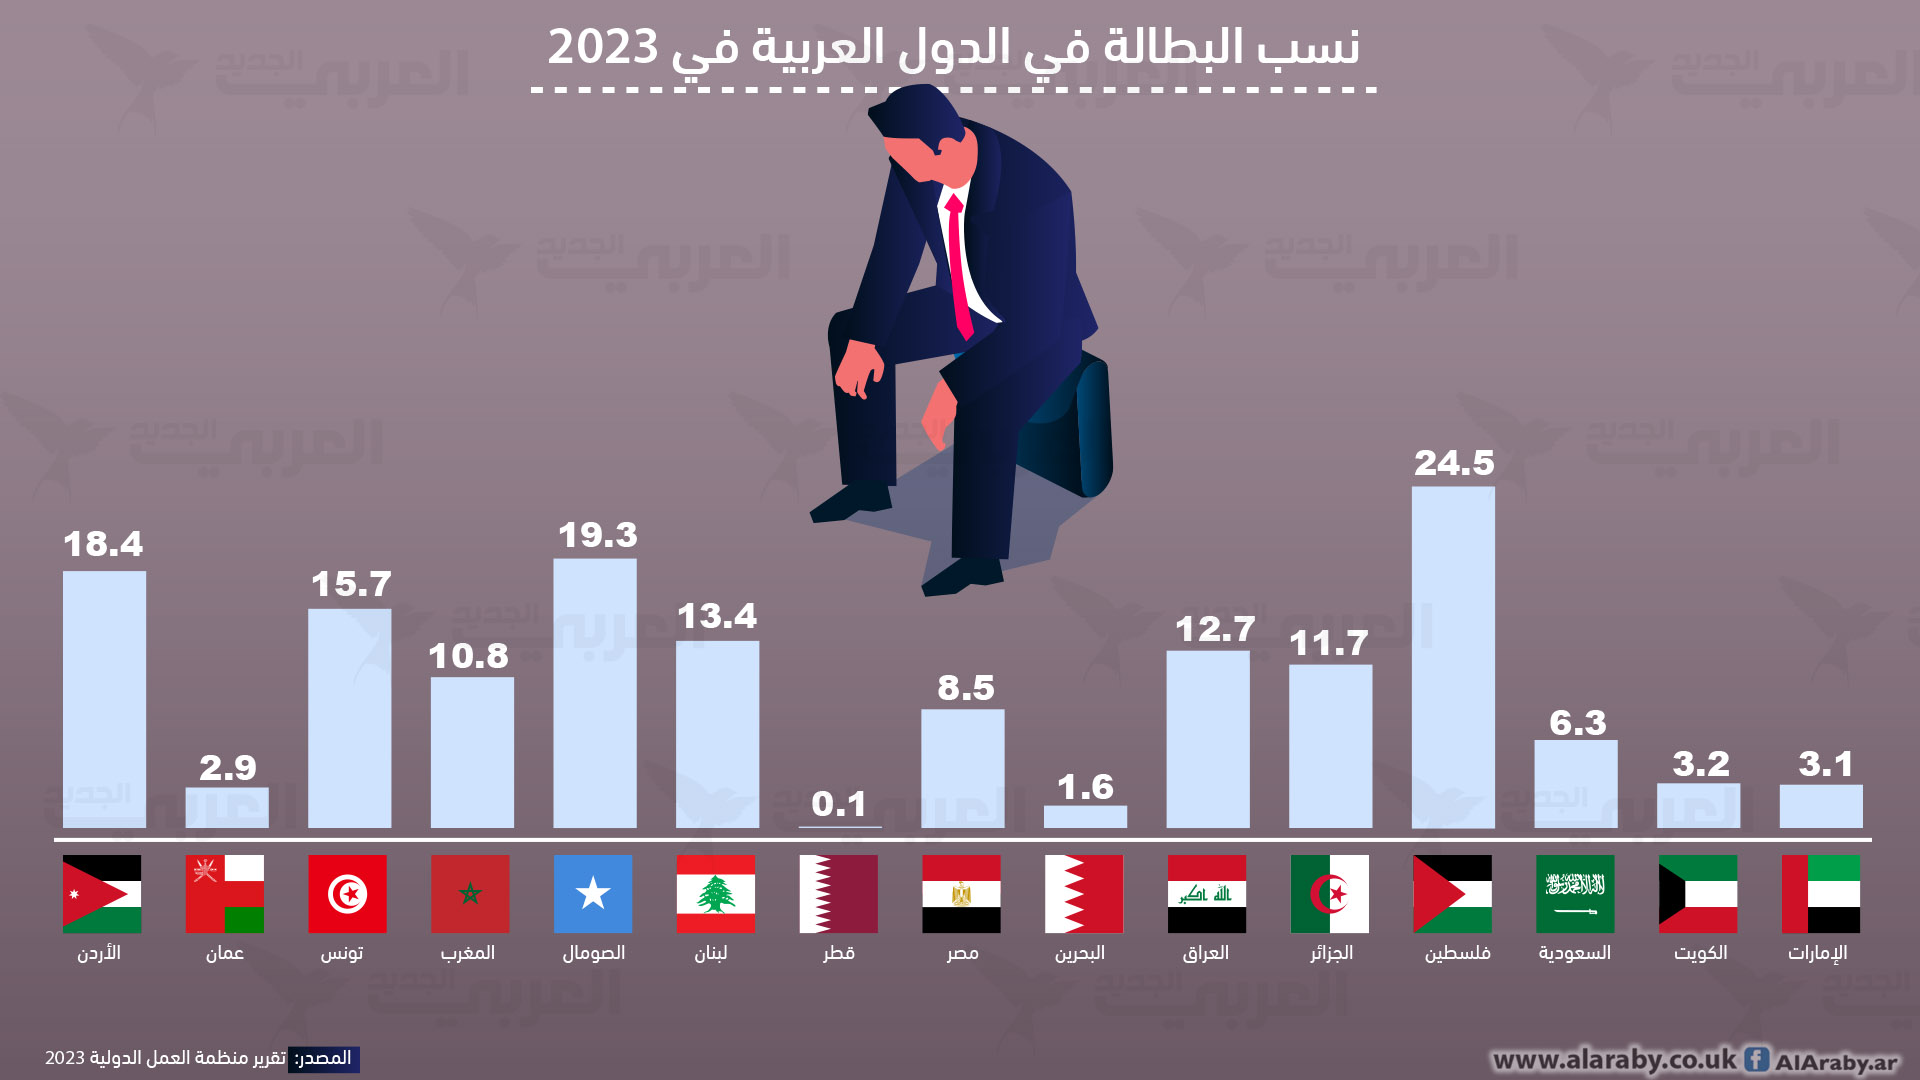 نسب البطالة في الدول العربية في 2023